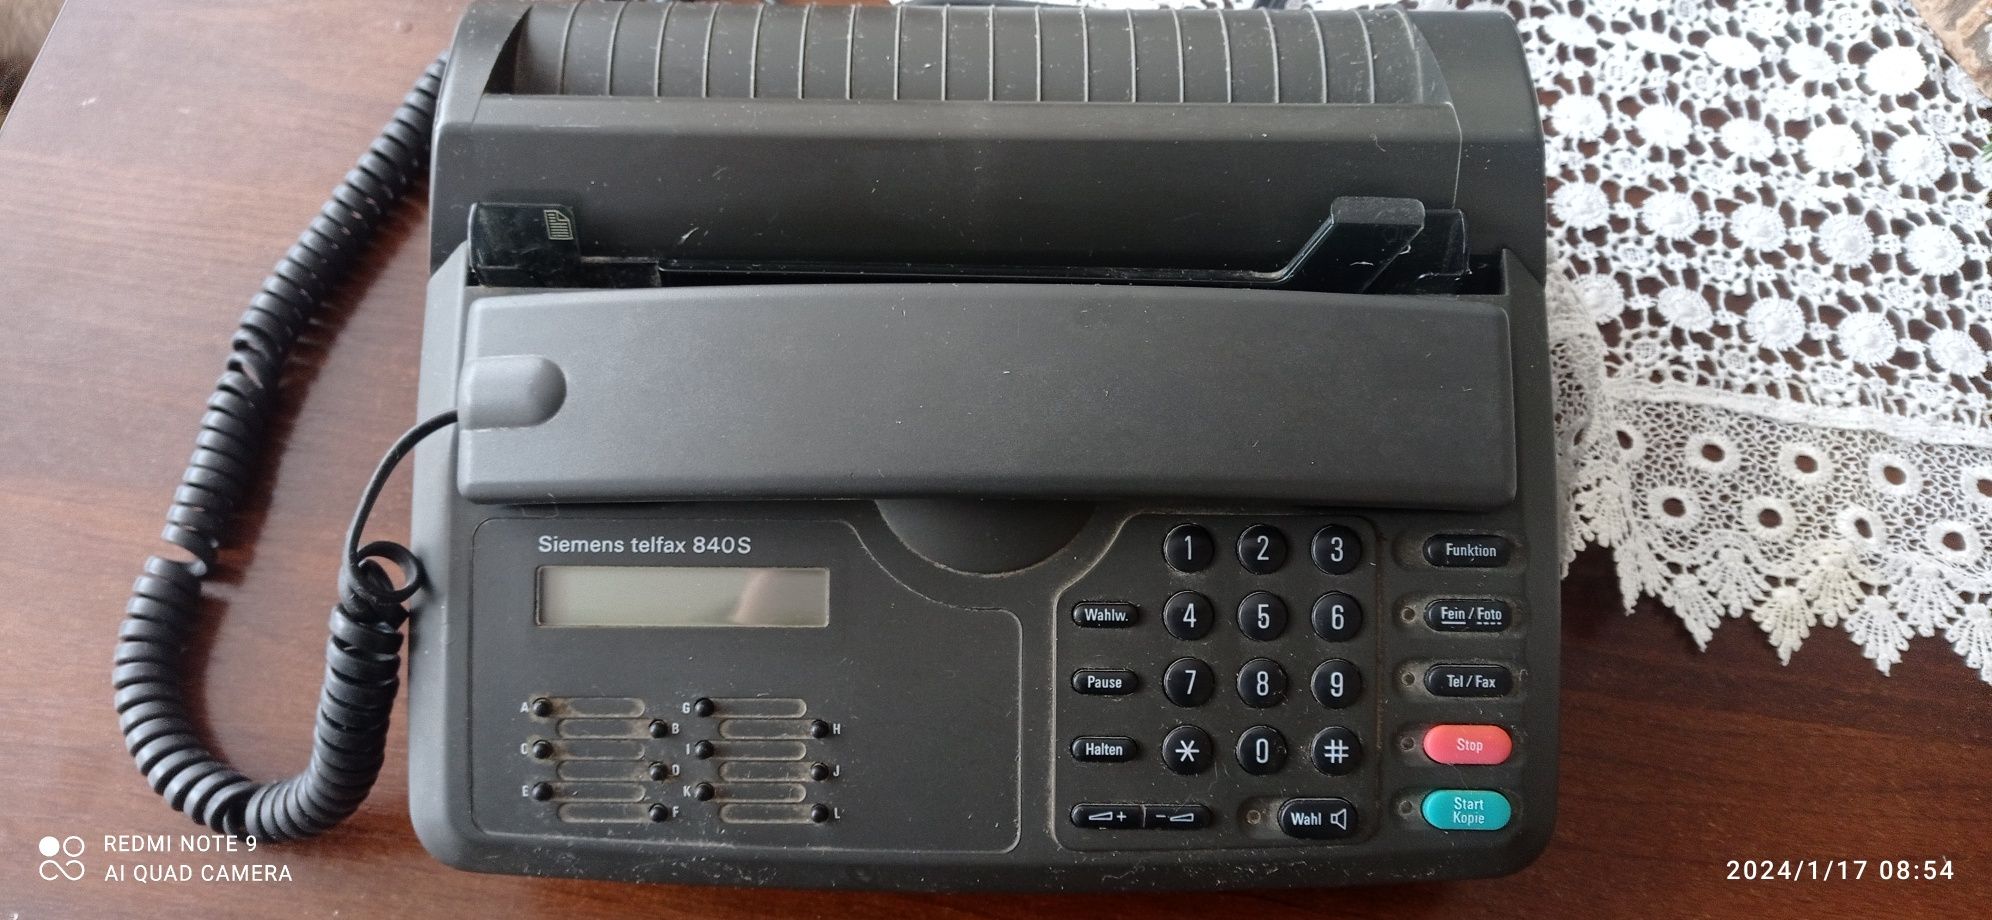 Telefon z faxem Siemens 840s